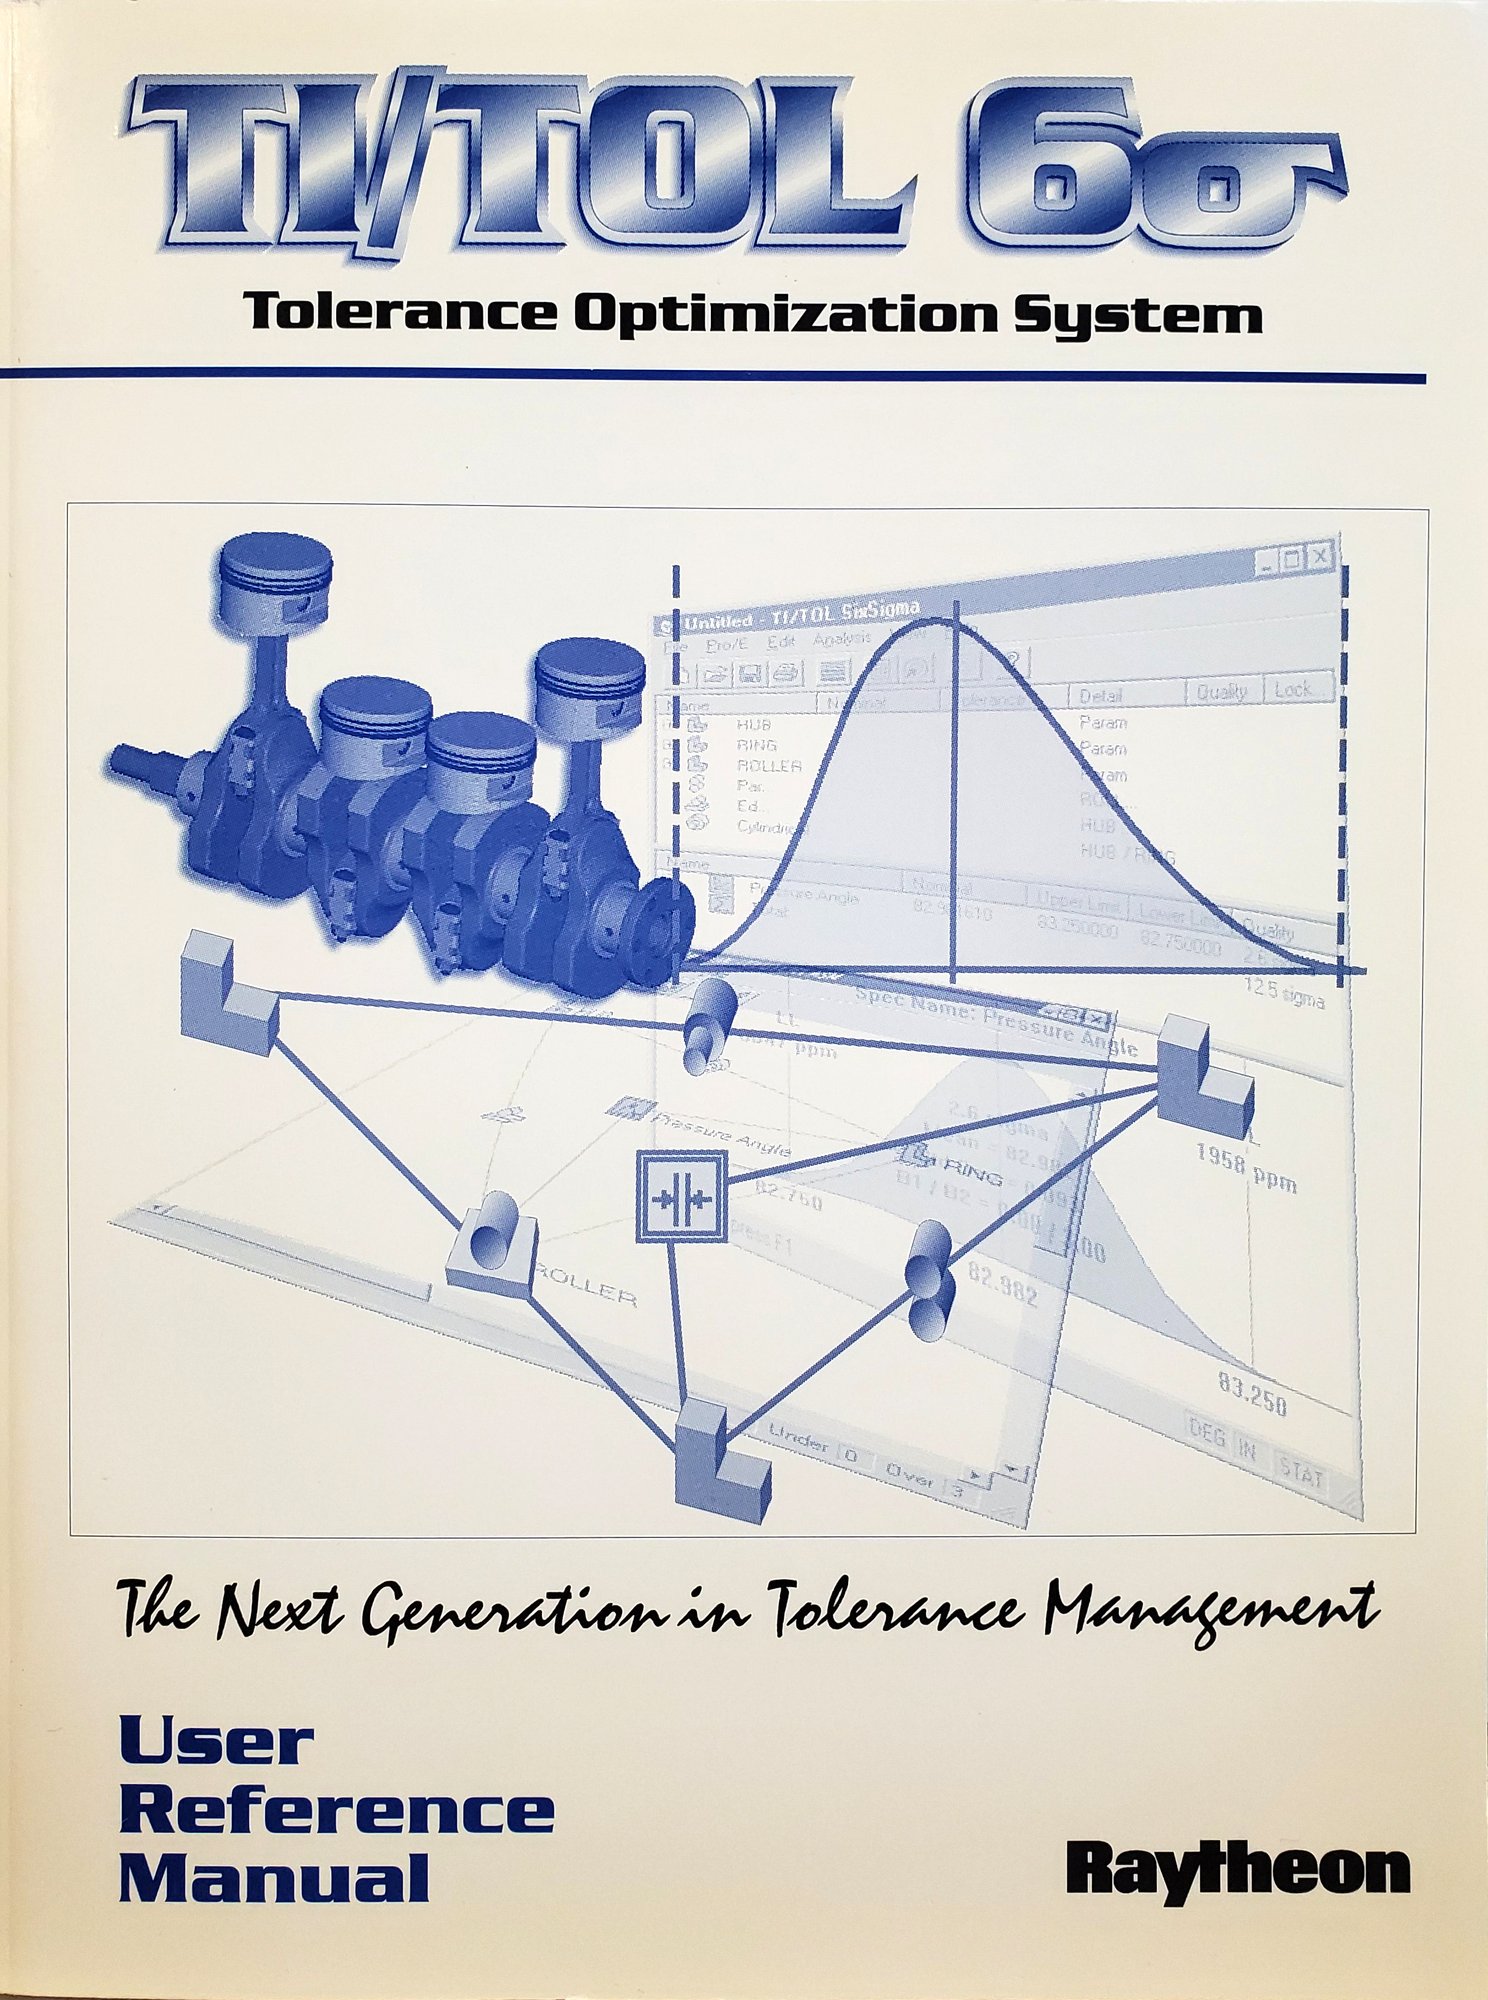 TI/TOL Raytheon user manual